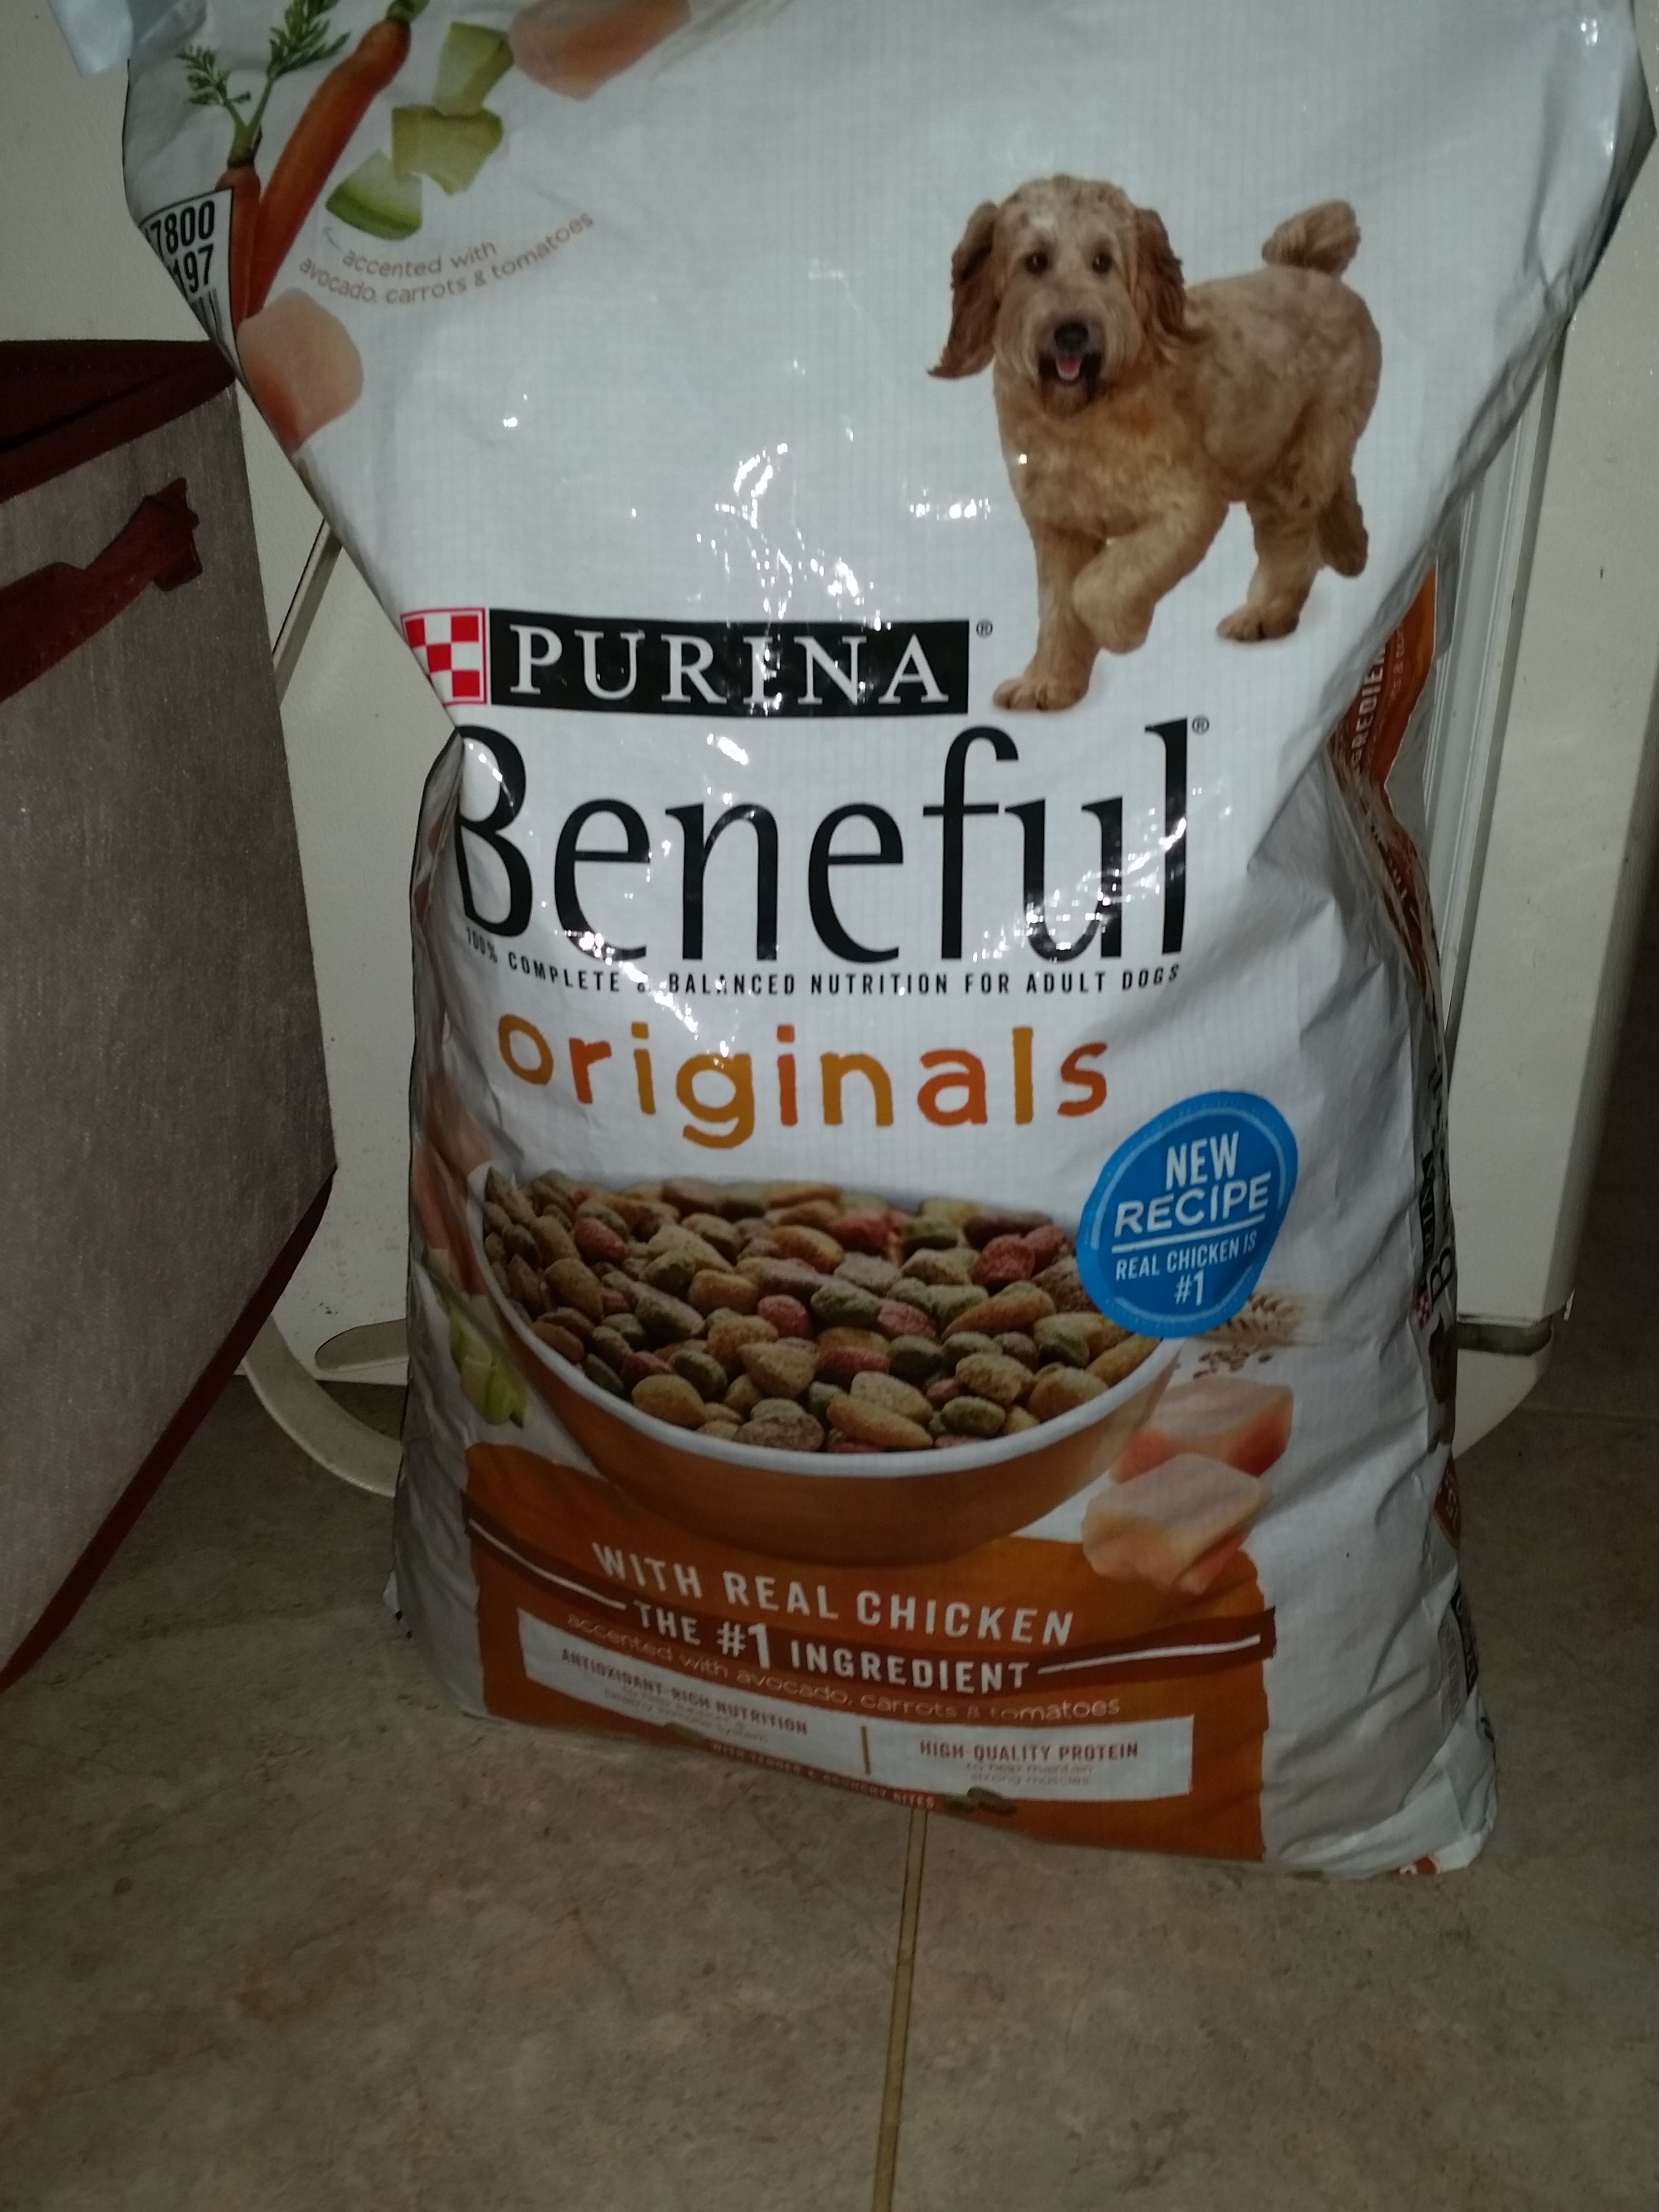 15lb bag of dog food